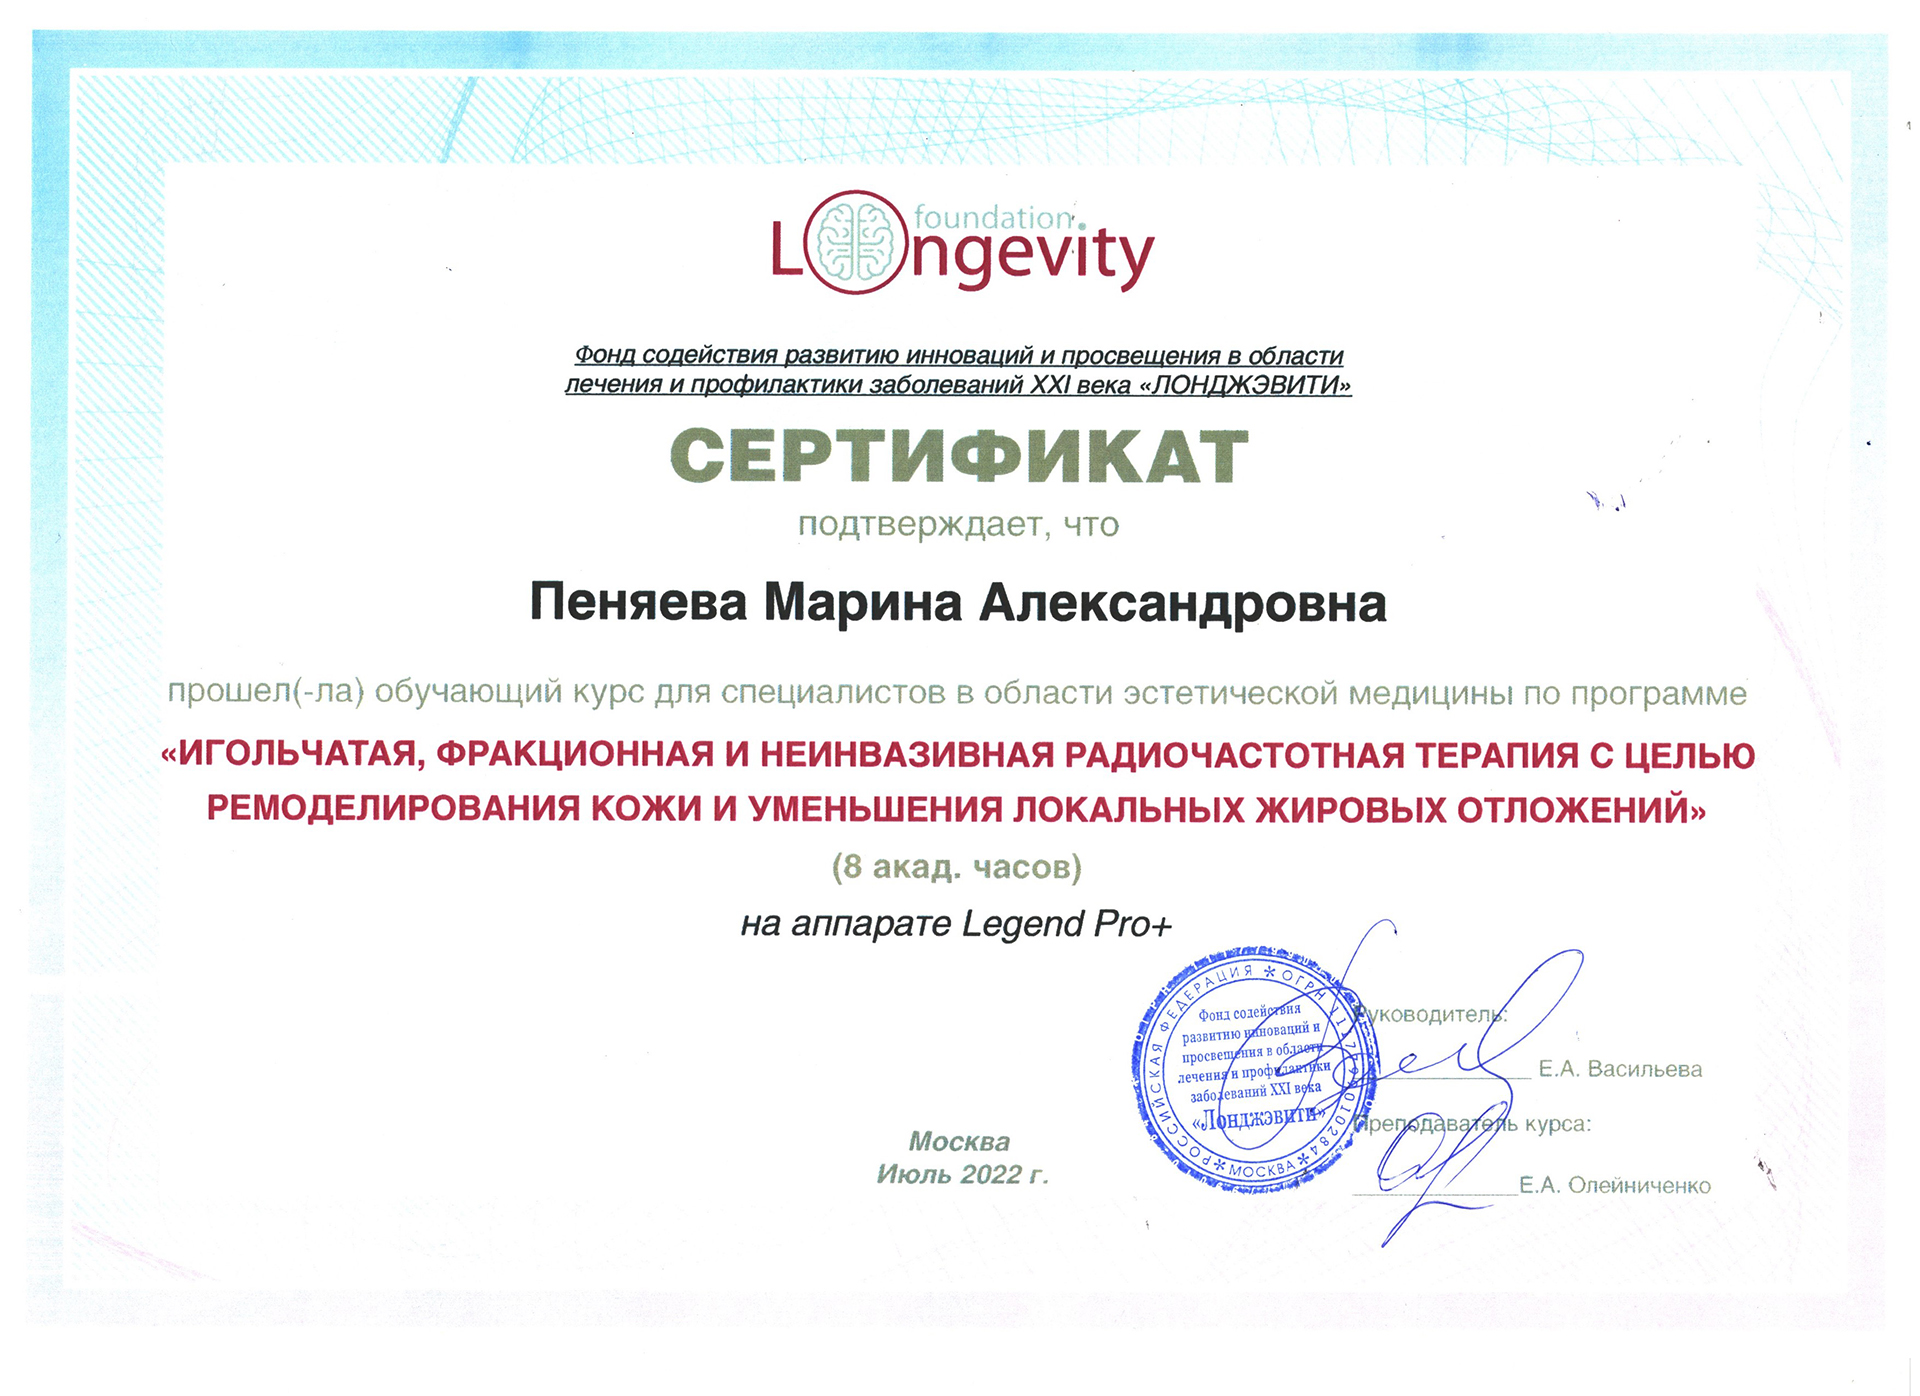 Сертификат — Программа «Игольчатая, фракционная и неинвазивная радиочастотная терапия». Пеняева Марина Александровна